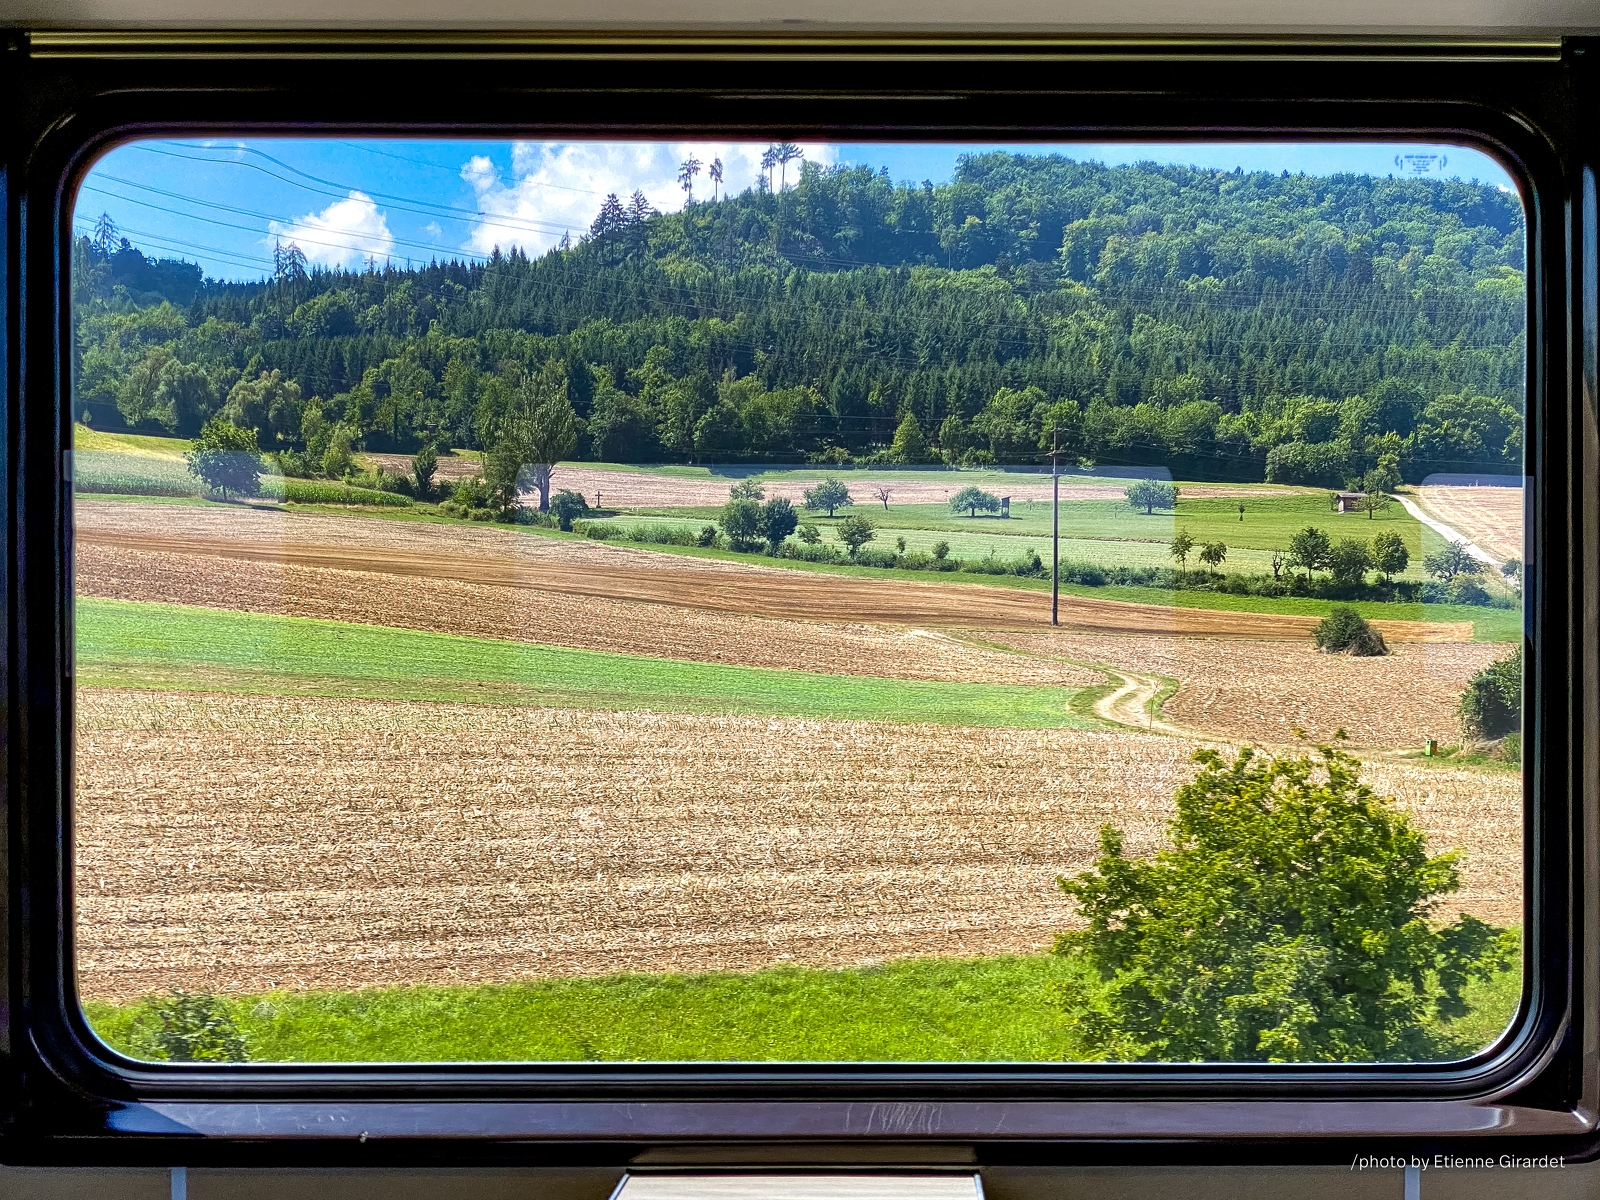 202207_24_IMG_2818-train-window-landscape-summer-by-E-Girardet.jpg